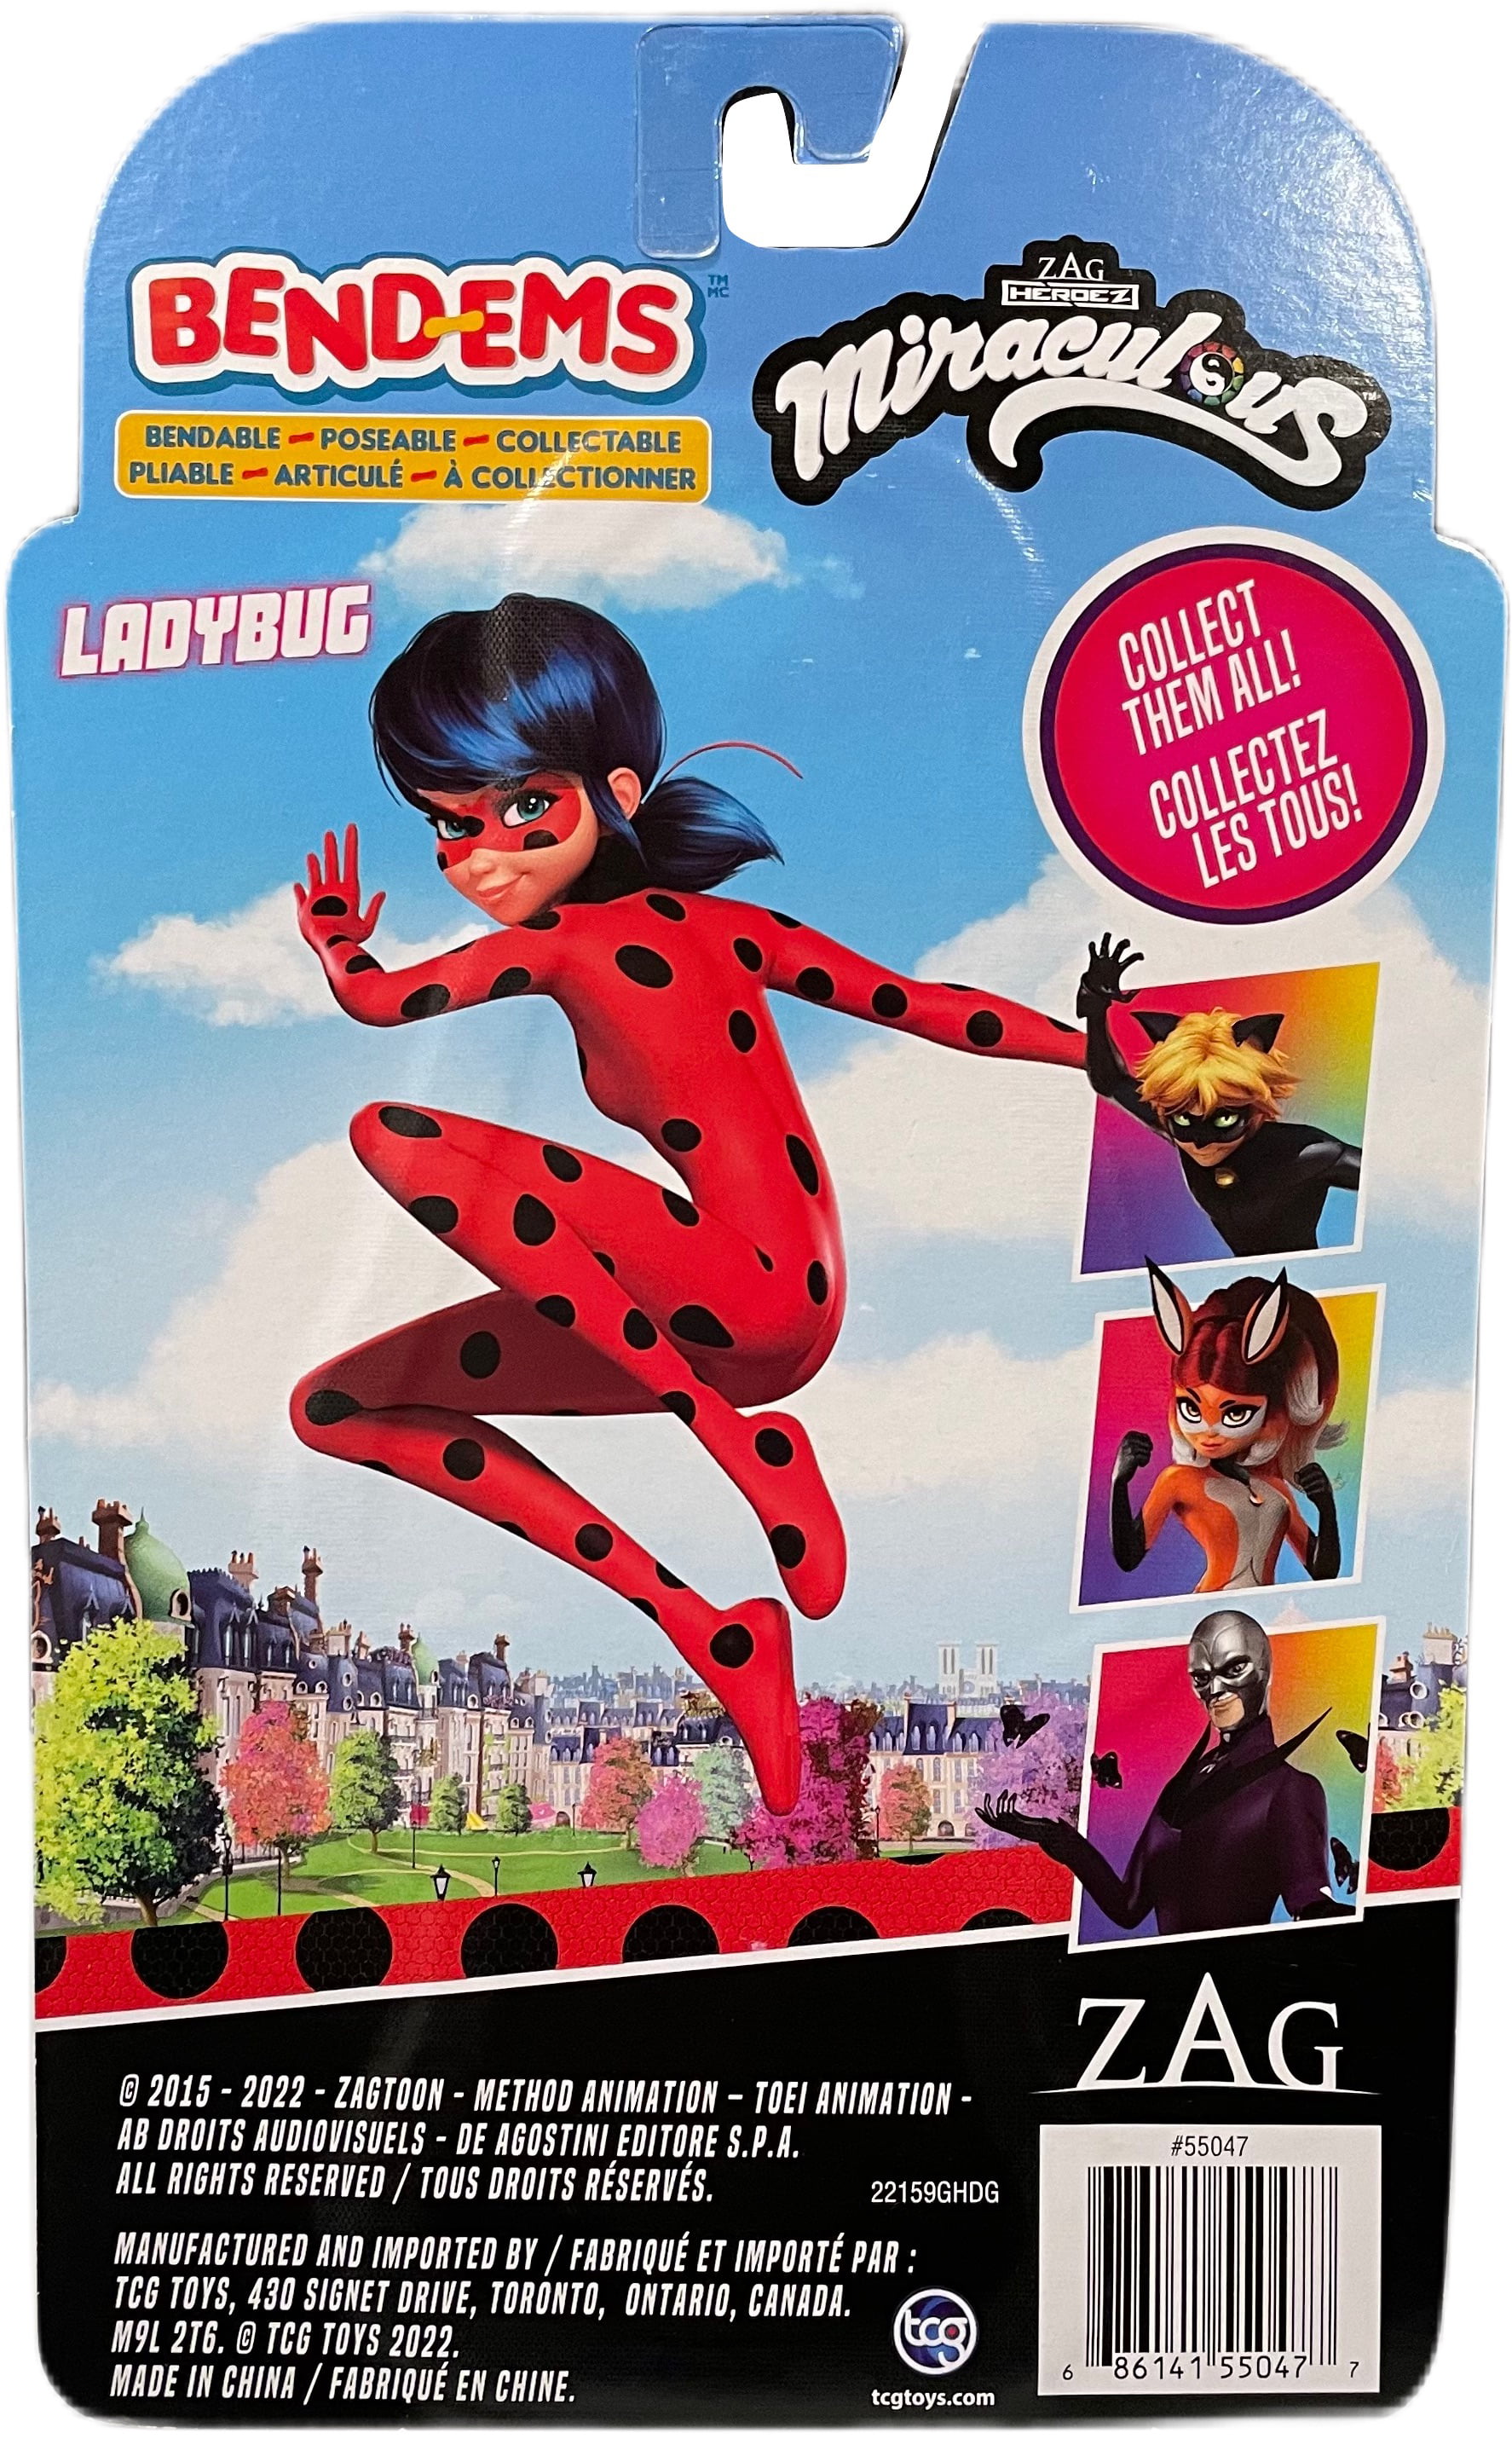 miraculous: tales of ladybug & cat noir™ bend-ems™ action figure Choose 1  Figure